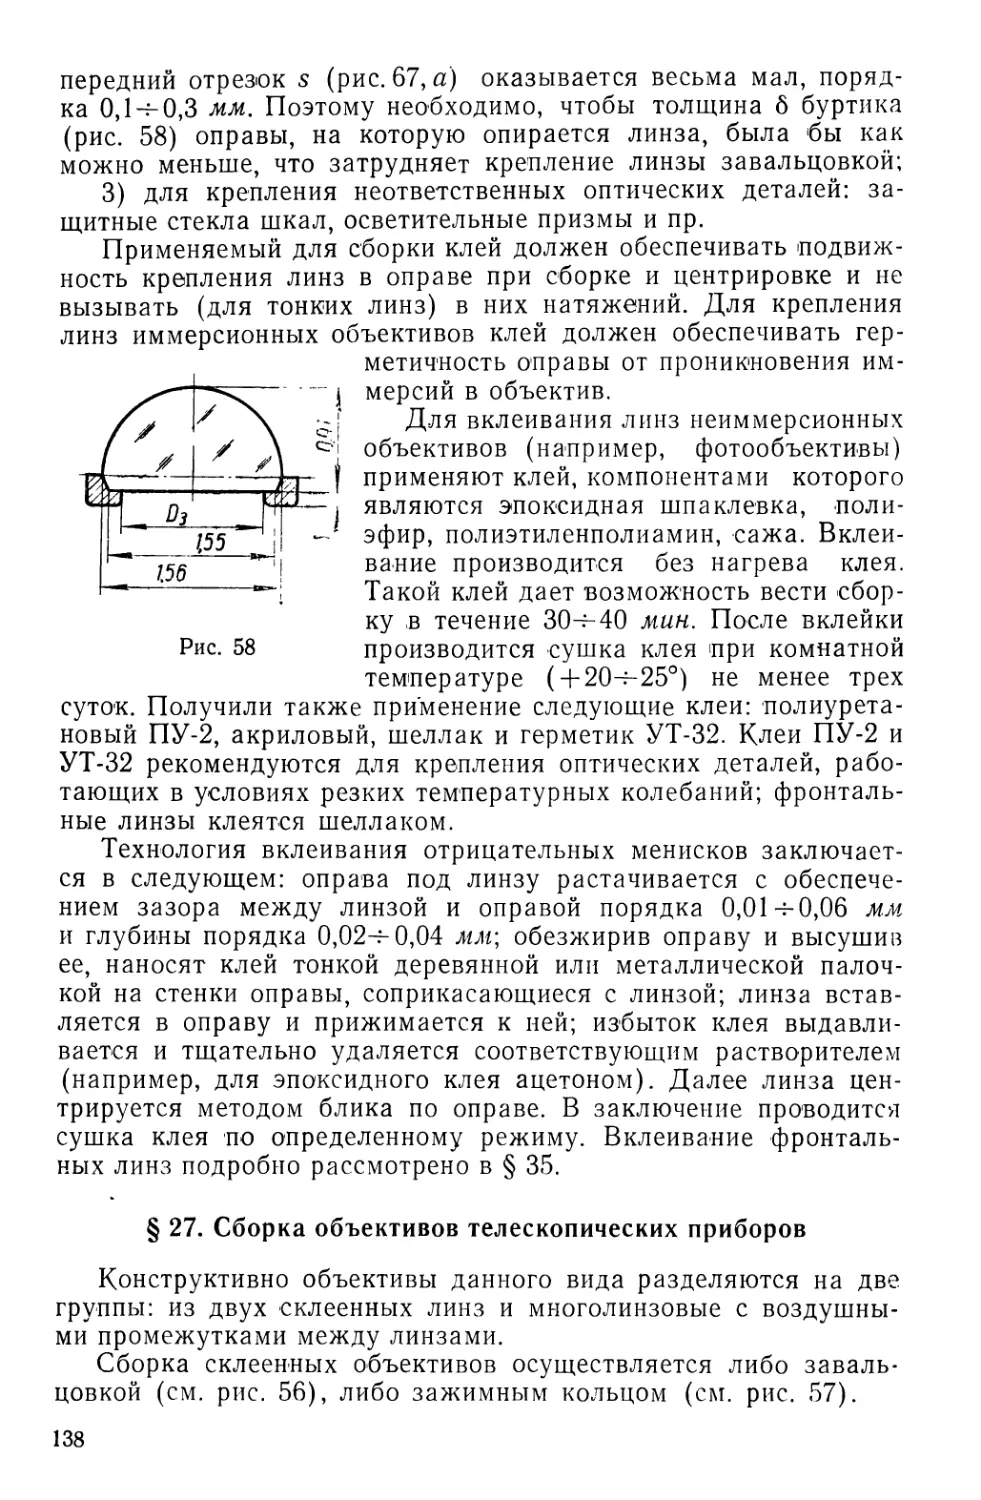 §27. Сборка объективов телескопических приборов